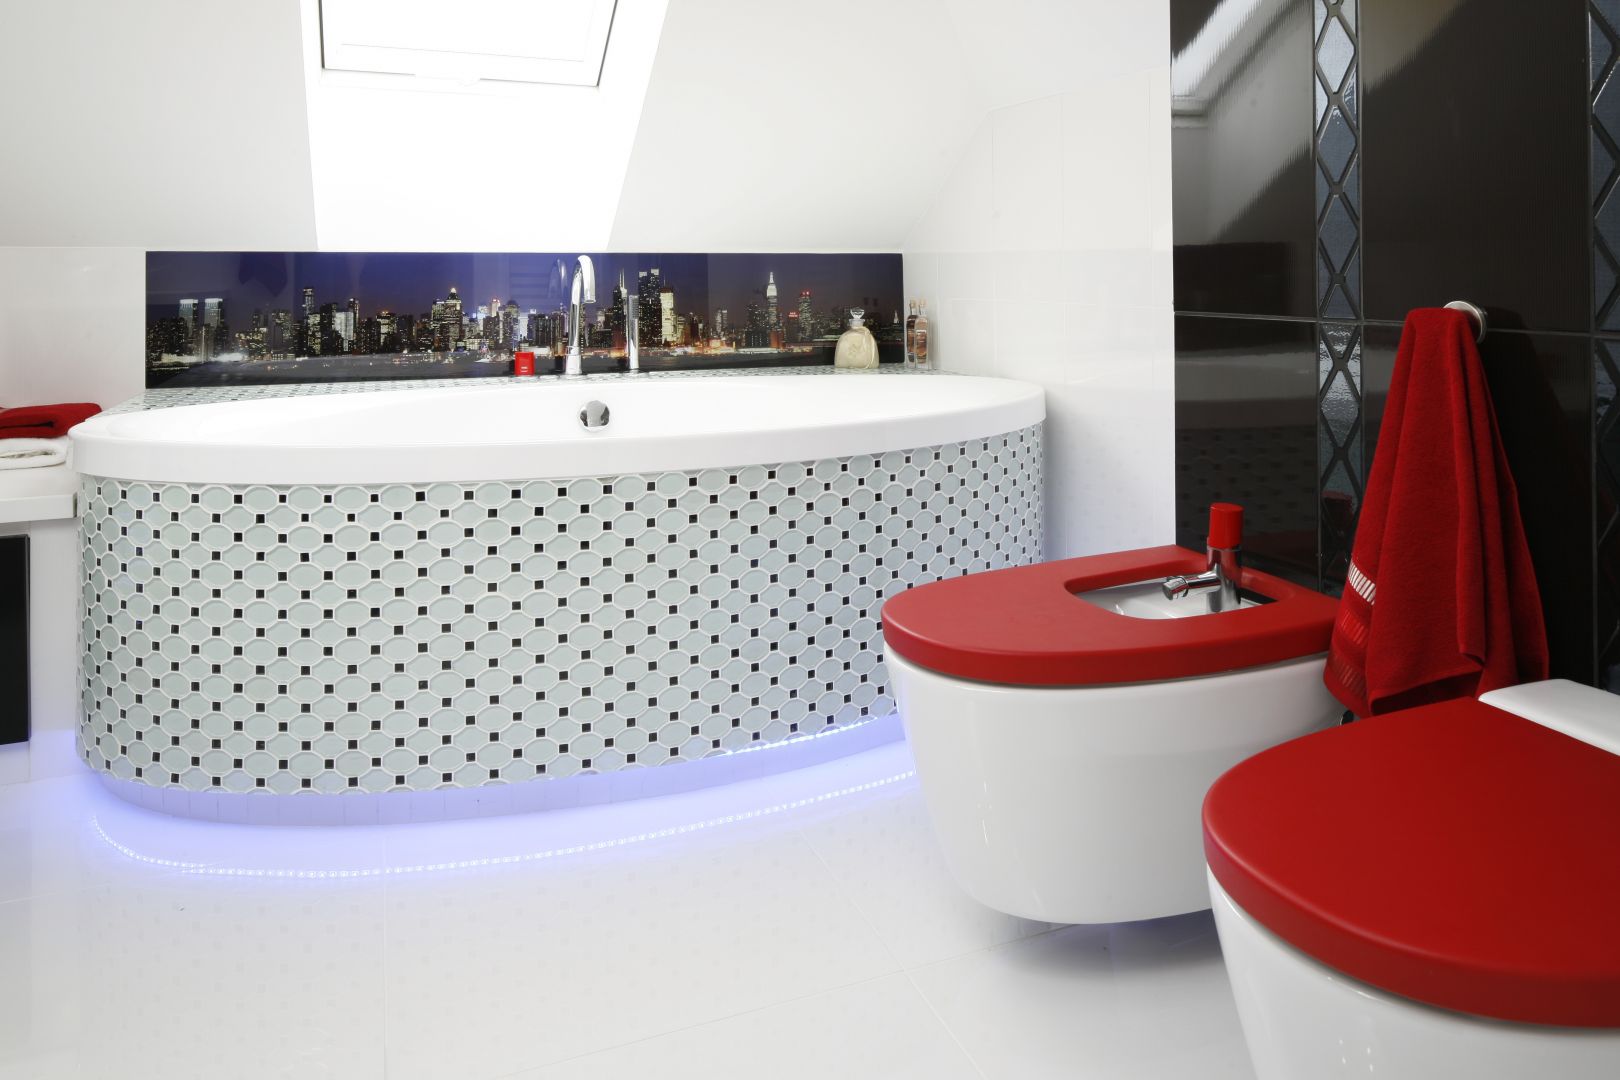 Czerwone deski mogą być elementem kontrastującym. To ciekawy detal w łazience. Projekt Marta Kilan. Fot. Bartosz Jarosz